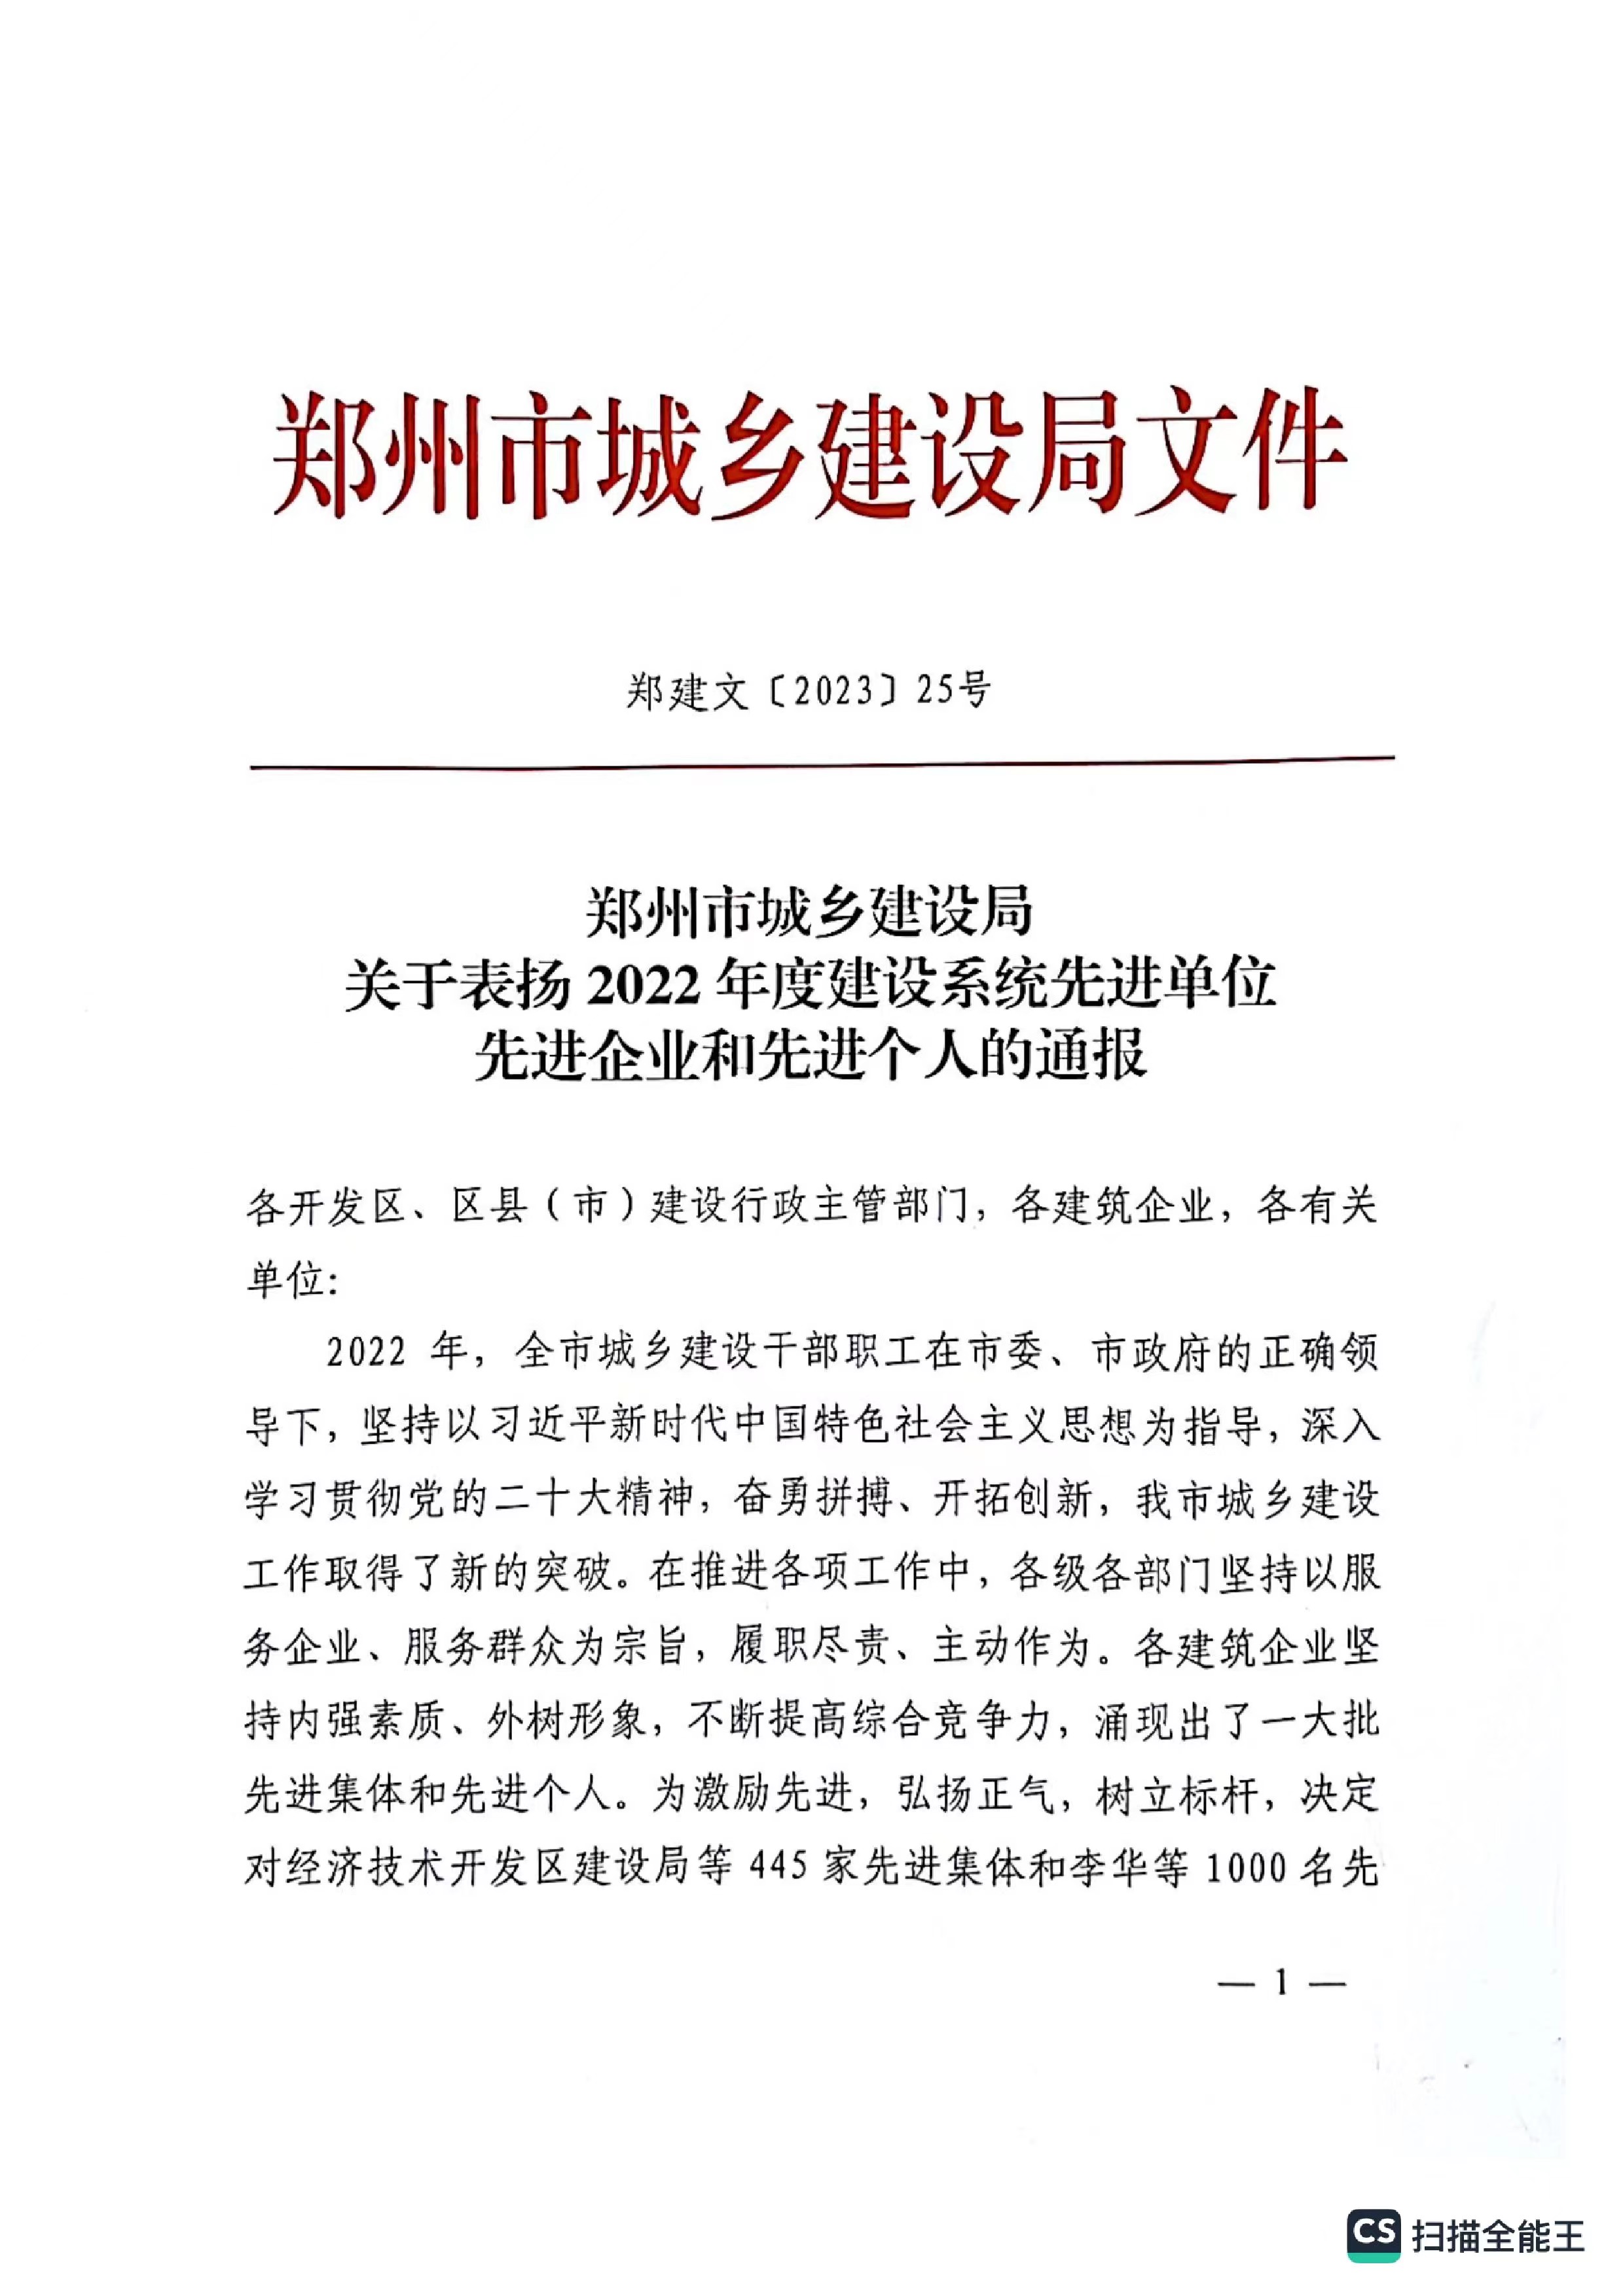 熱烈祝賀我公司獲得鄭州市城鄉建設局評定“2022年度建設系統先進單位“企業稱號。